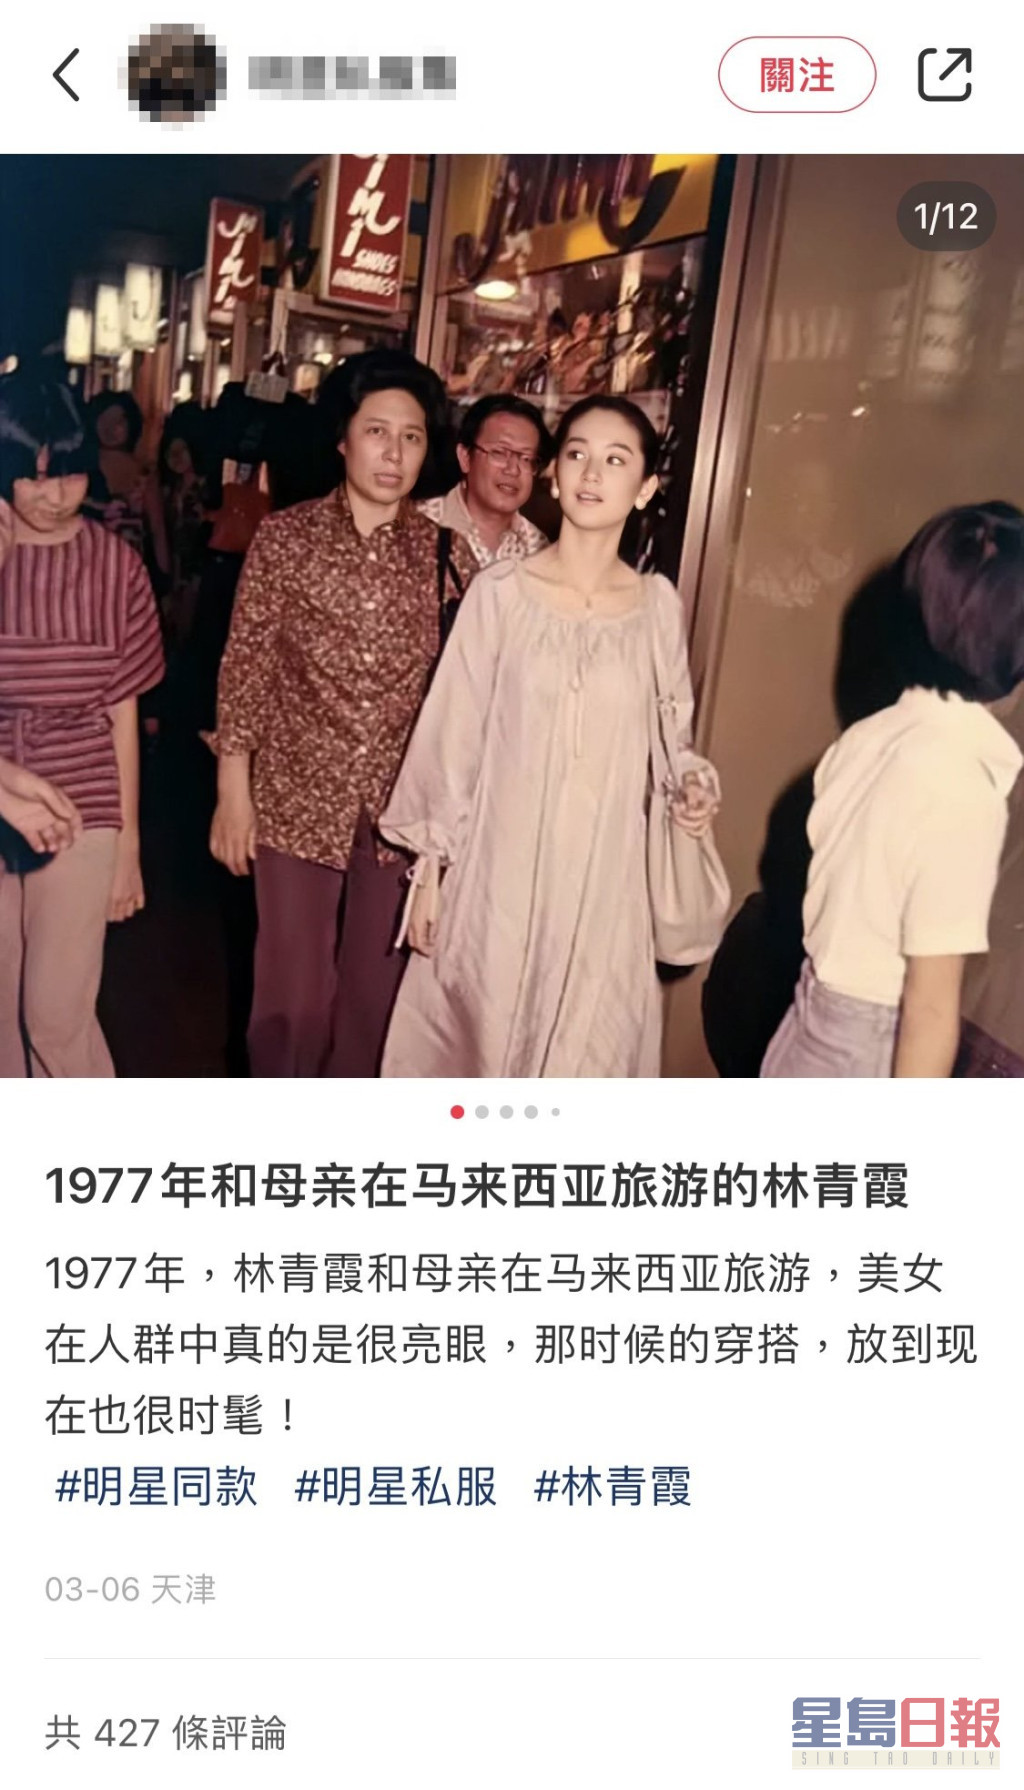 林青霞1977年游大马的照片，最近突然在网上流传。